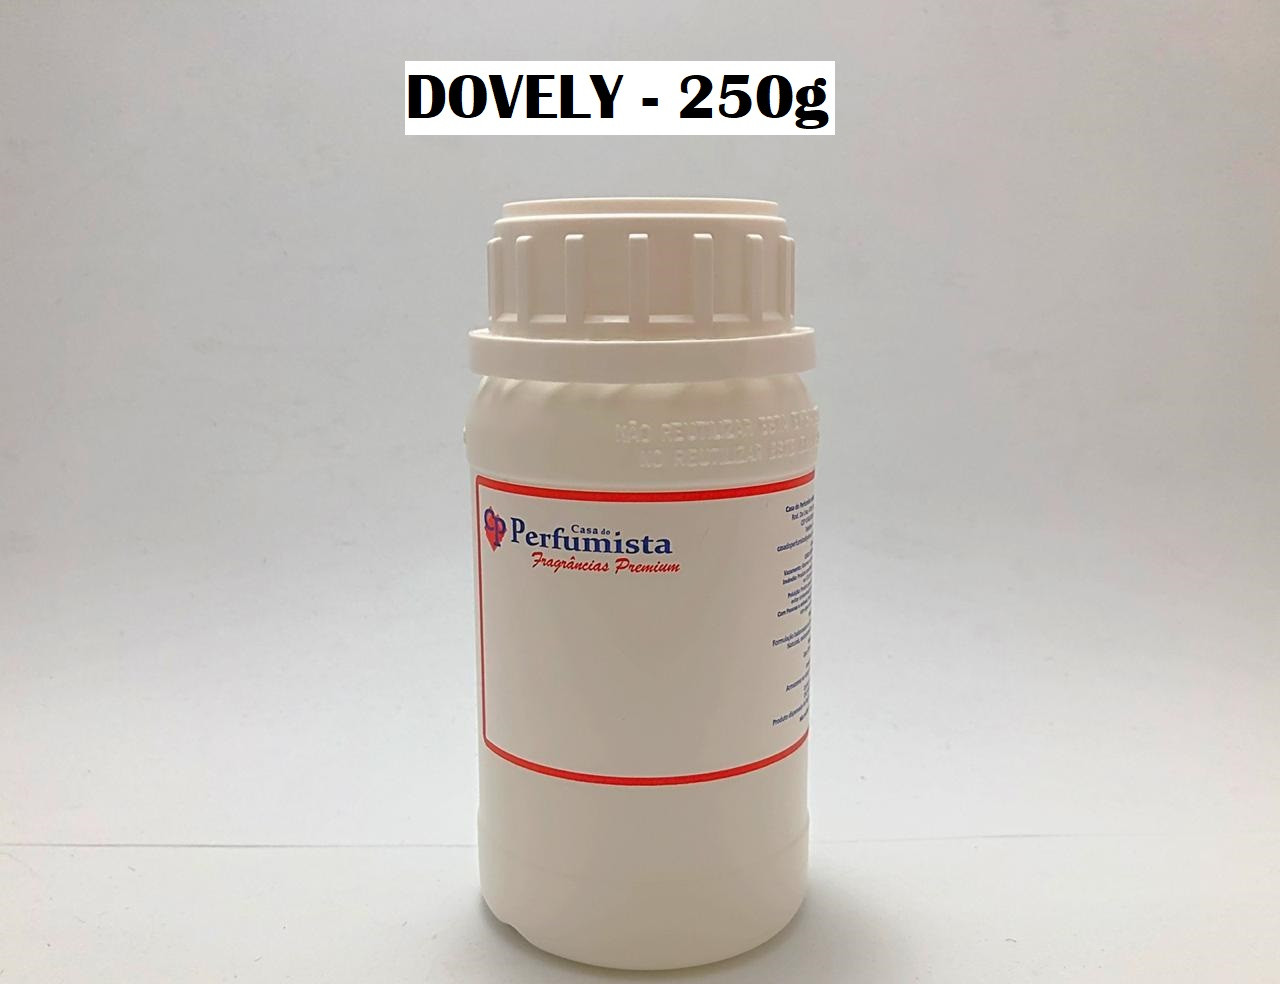 DOVELY - 250g